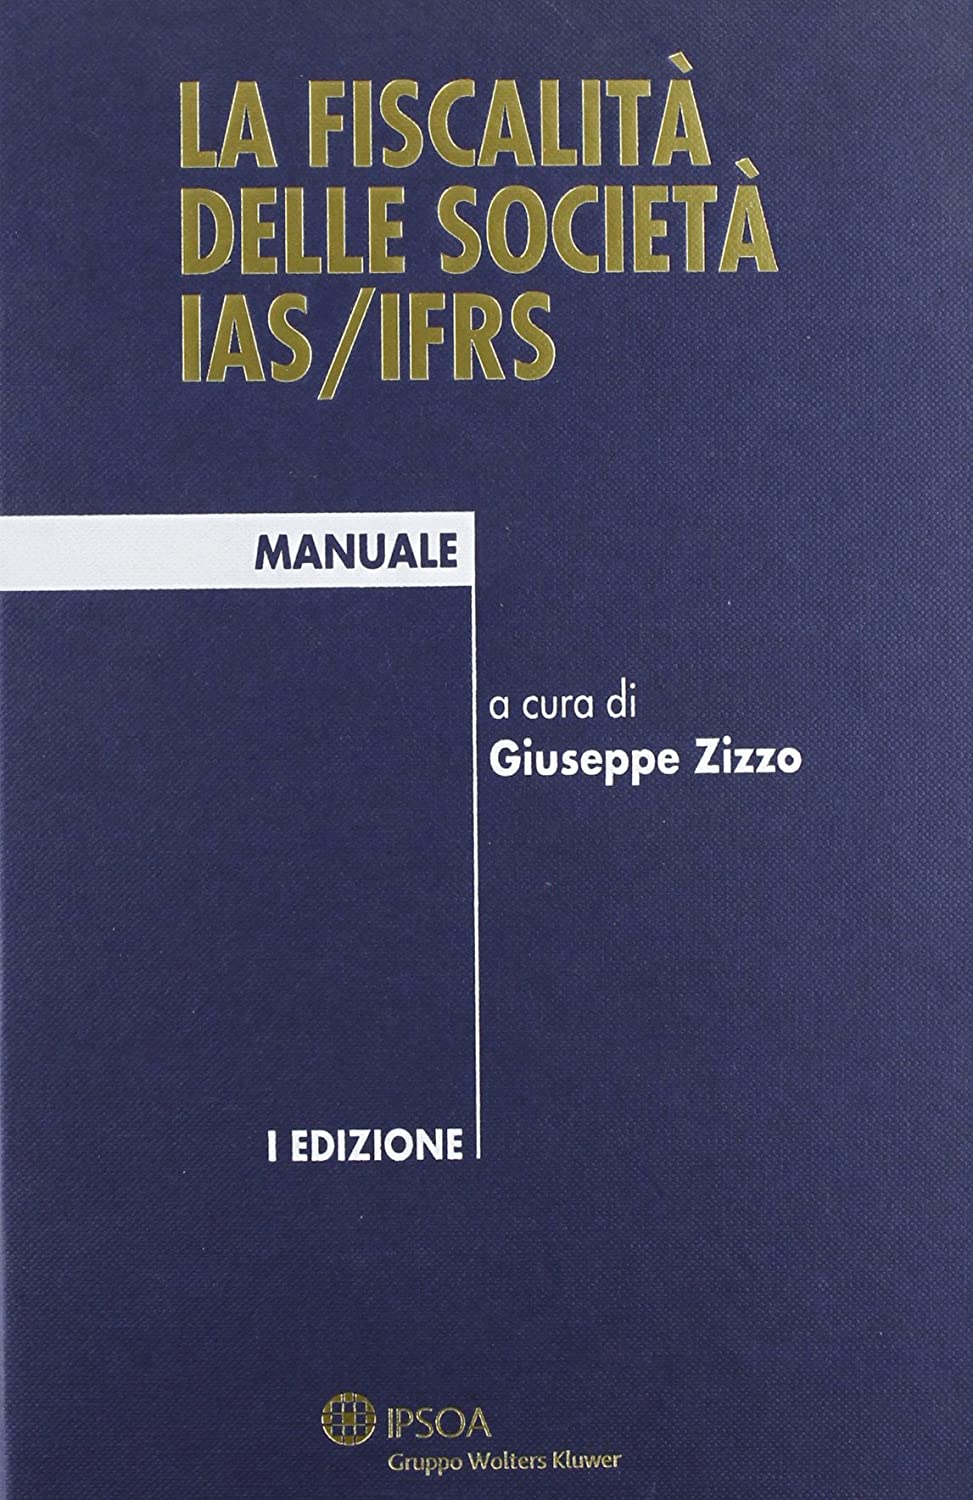 Libri Fiscalita Delle Societa IAS/IFRS (La) NUOVO SIGILLATO, EDIZIONE DEL 01/05/2011 SUBITO DISPONIBILE